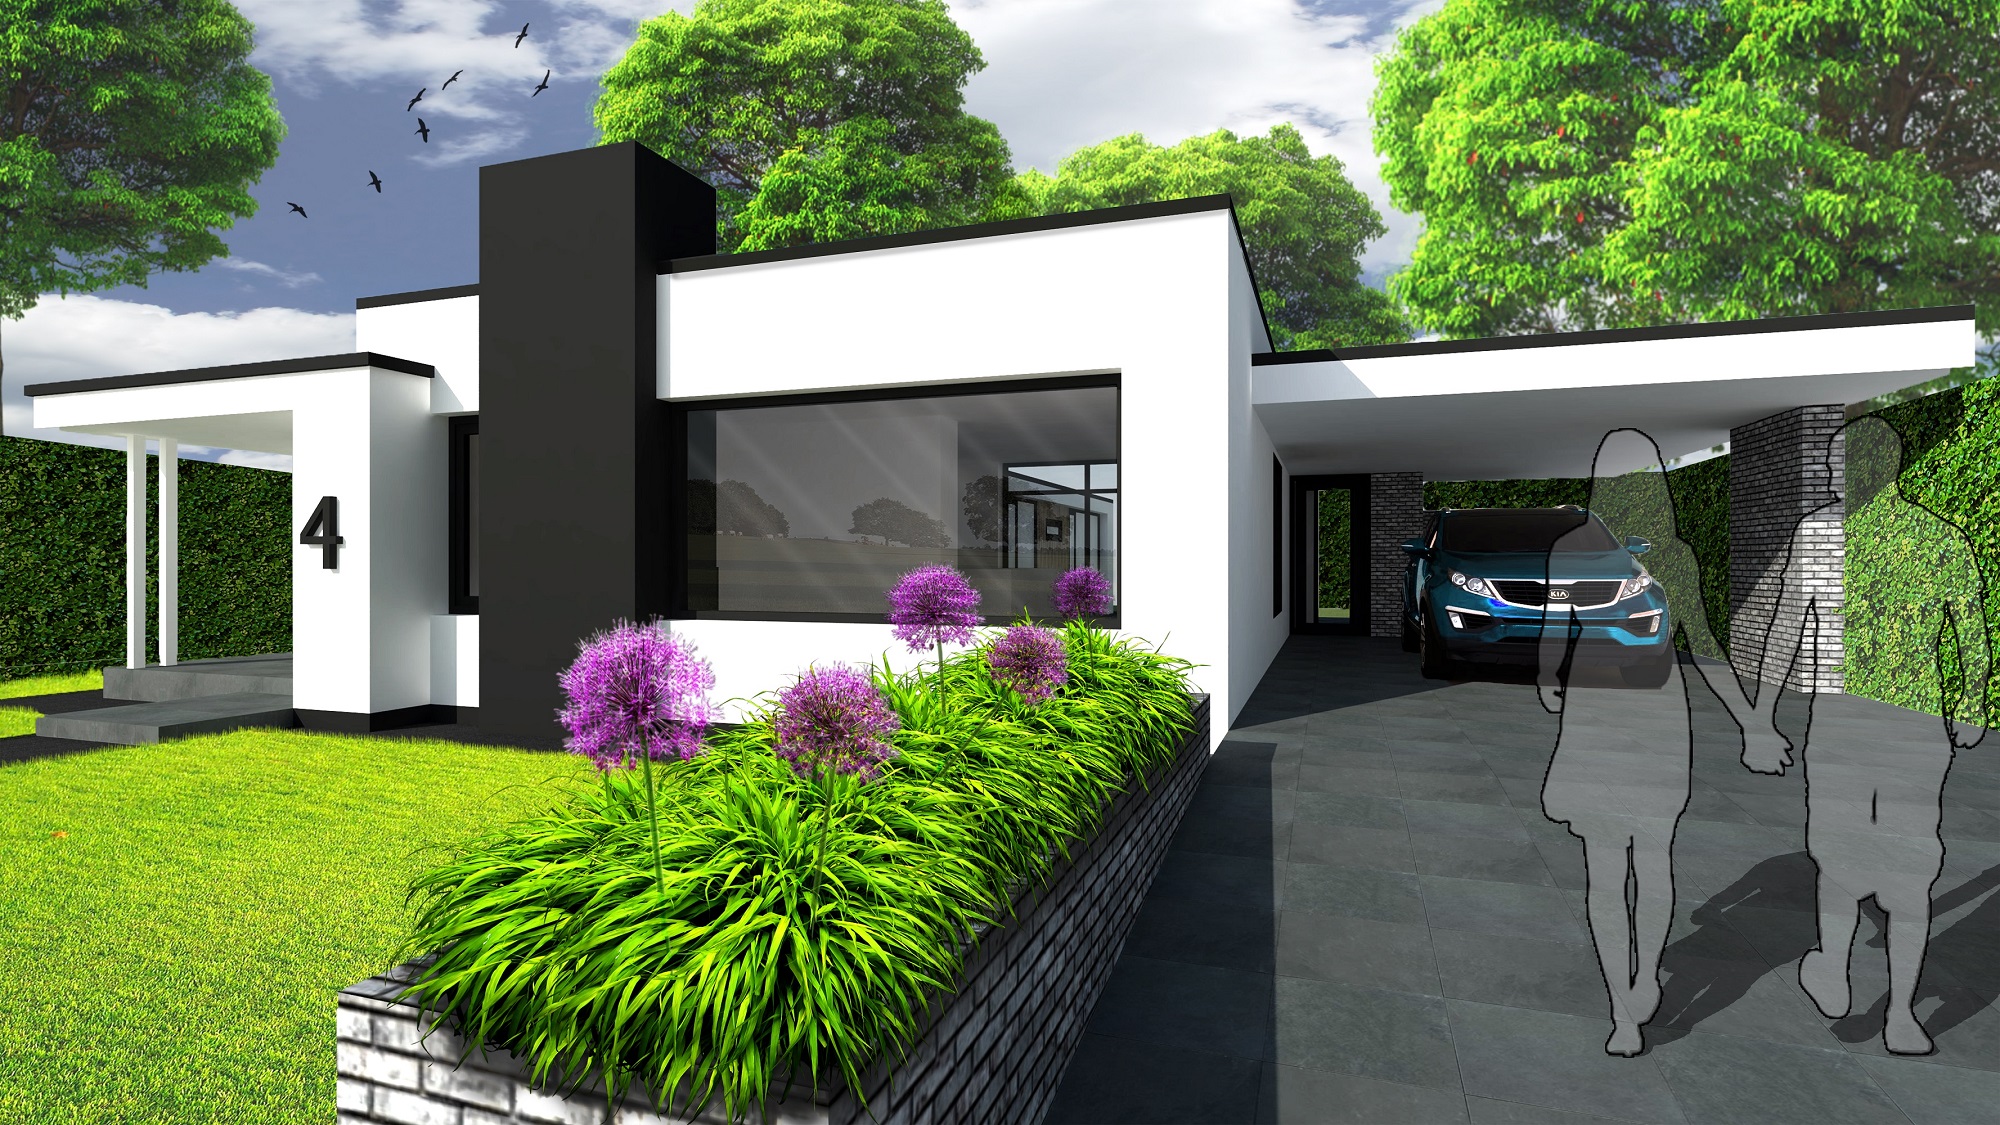 Atelier-007-moderne-woning-modern-house-wit-glas-licht-zicht_FRONT